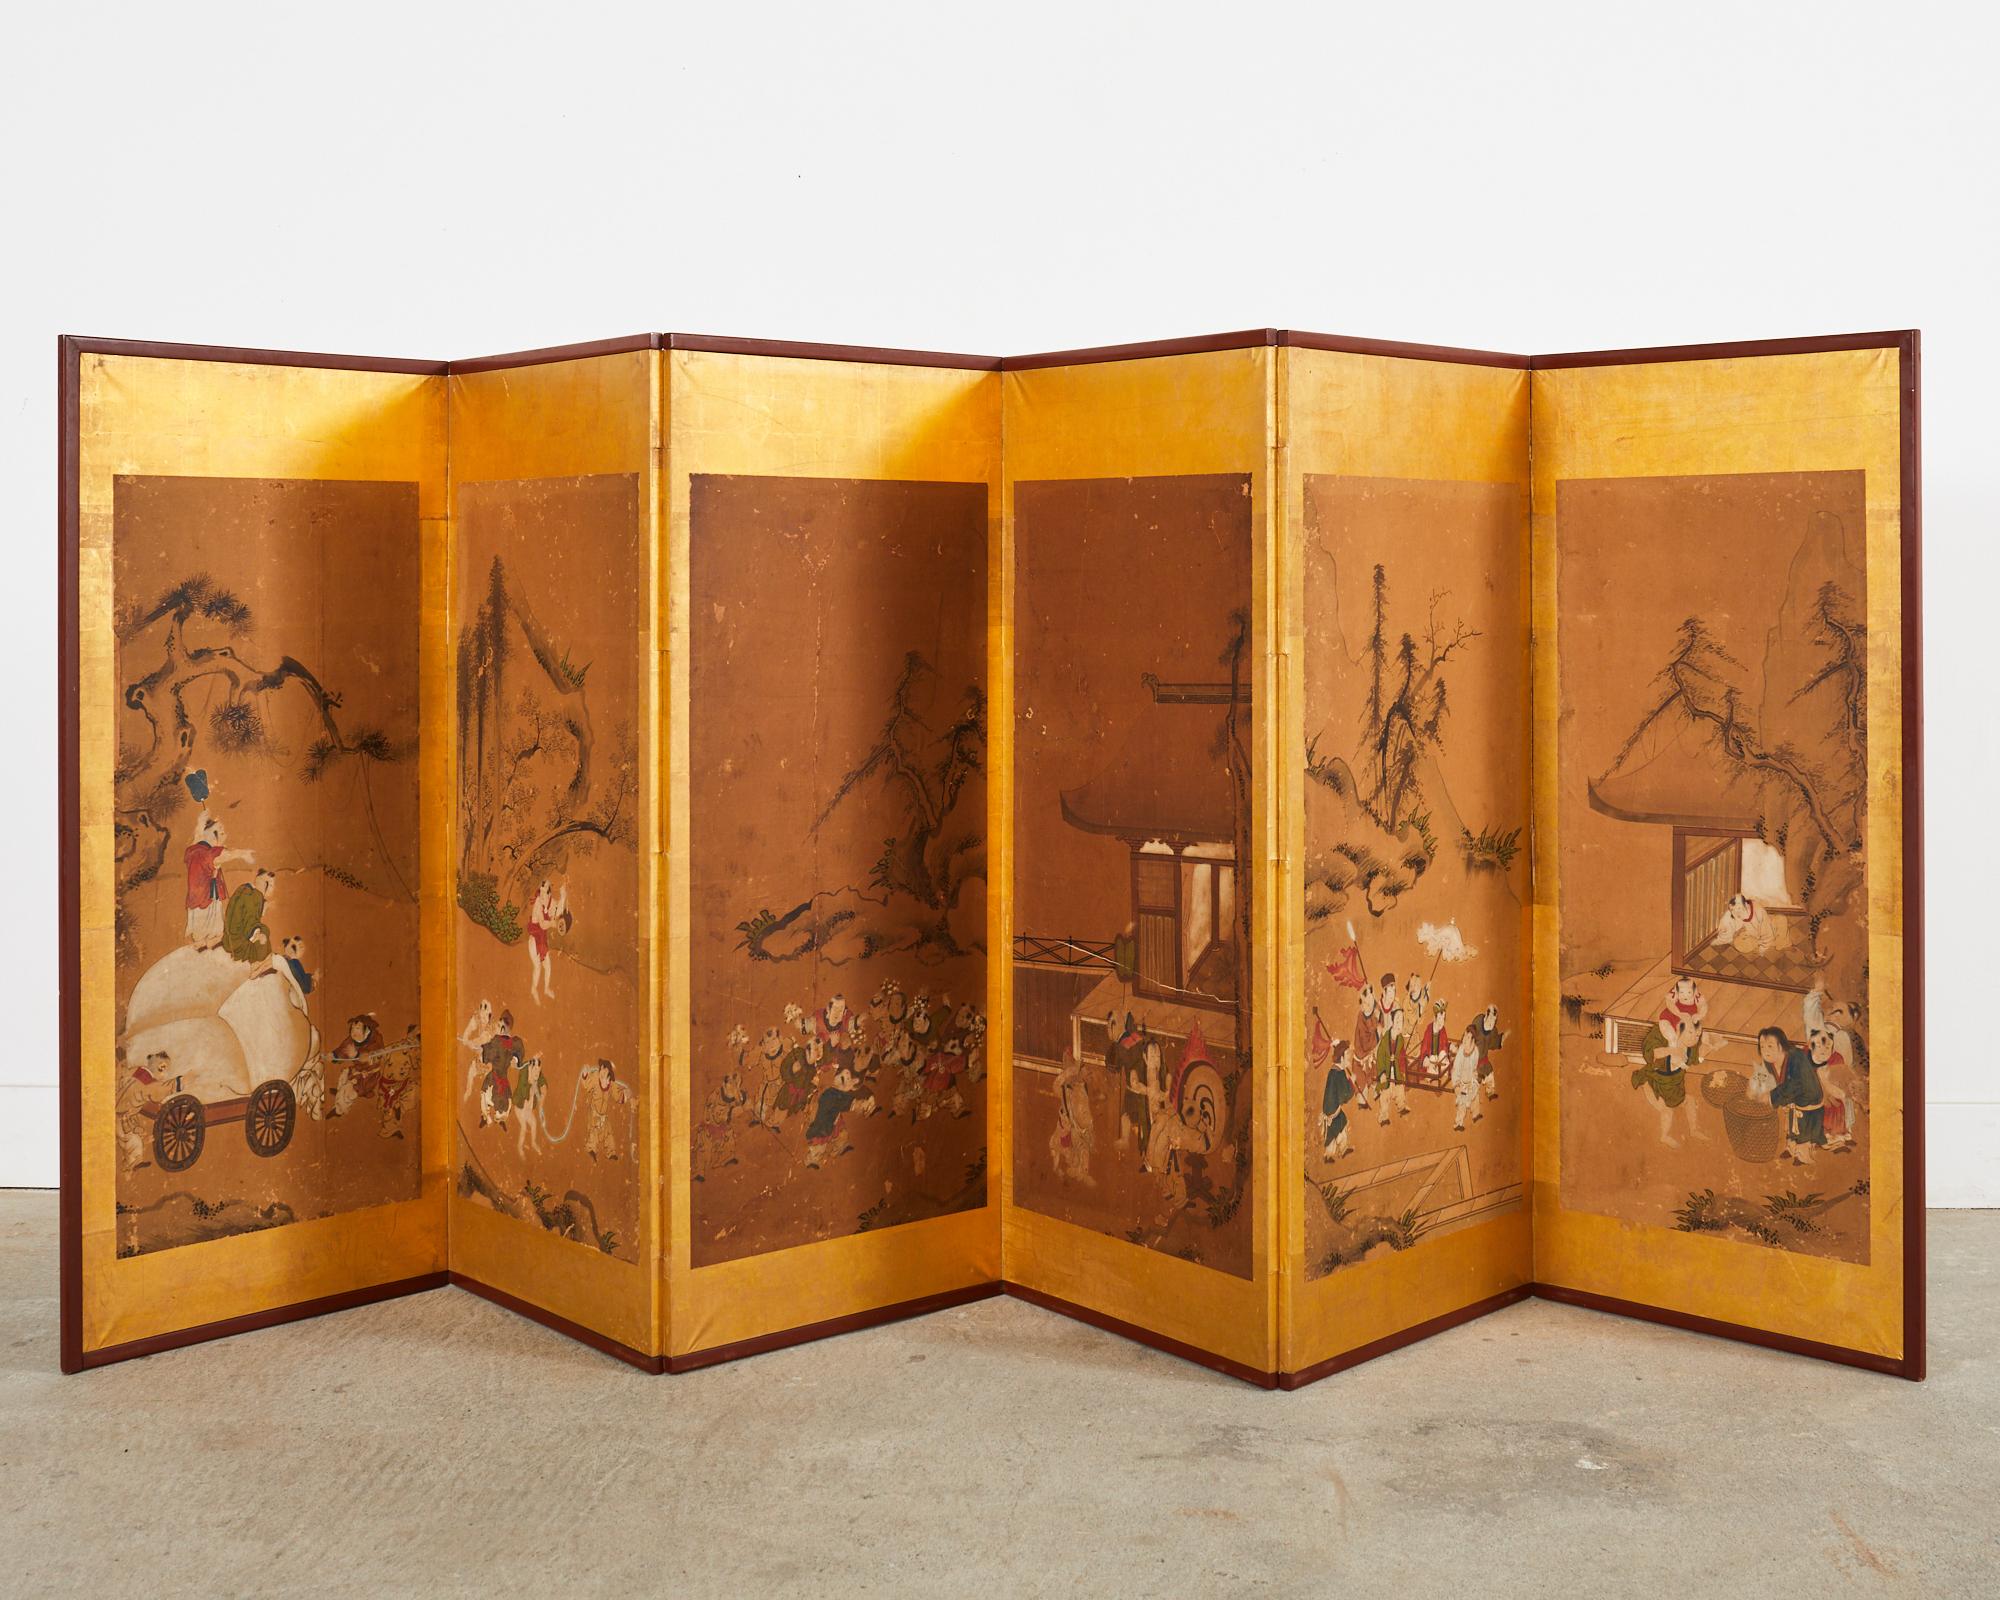 Erstaunliche japanische Edo-Periode 19. Jahrhundert sechs Panel faltenden byobu Bildschirm, der chinesische Kinder beim Spielen darstellt. Der Bildschirm spielt auf das Thema 100 Kinder an. Die Gemälde befinden sich in einem lackierten, verblassten